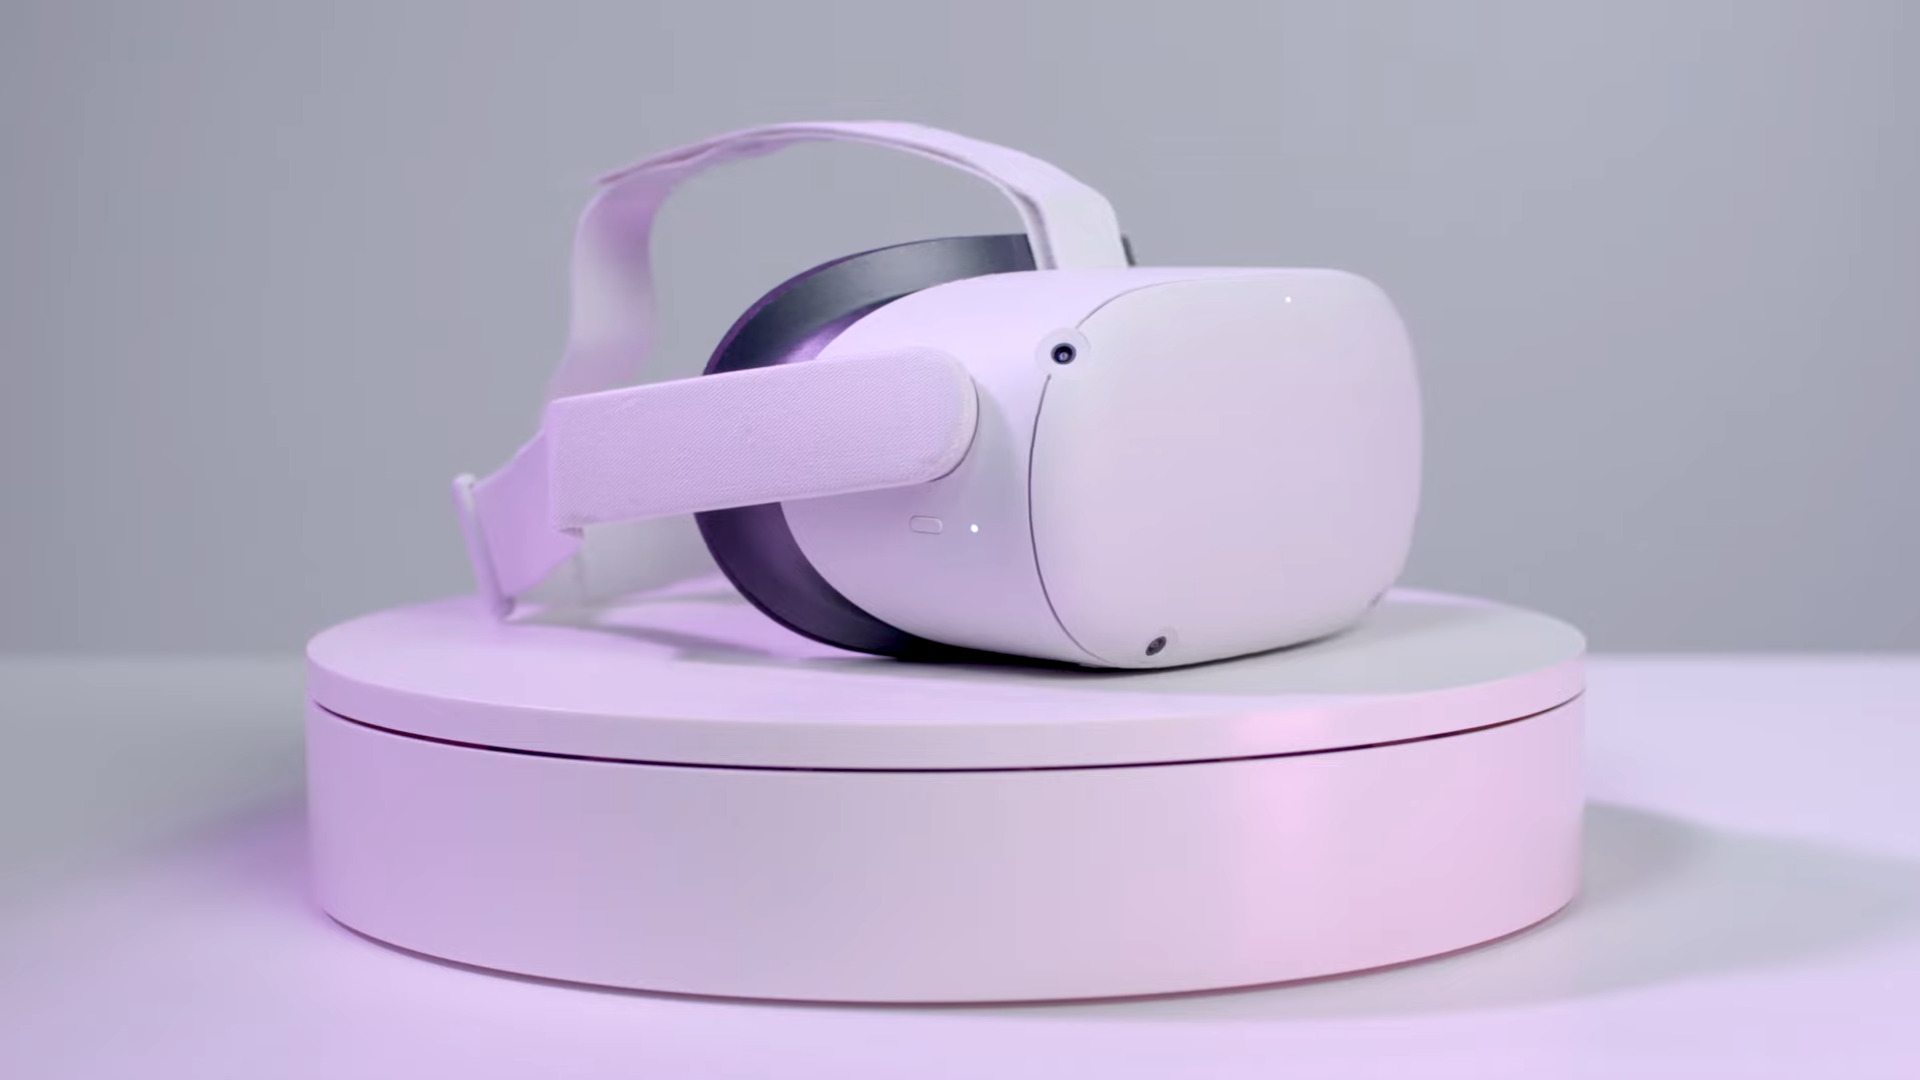 Et Oculus Quest 2 -headset ovenpå en hvid sokkel, badet i lilla farvetone